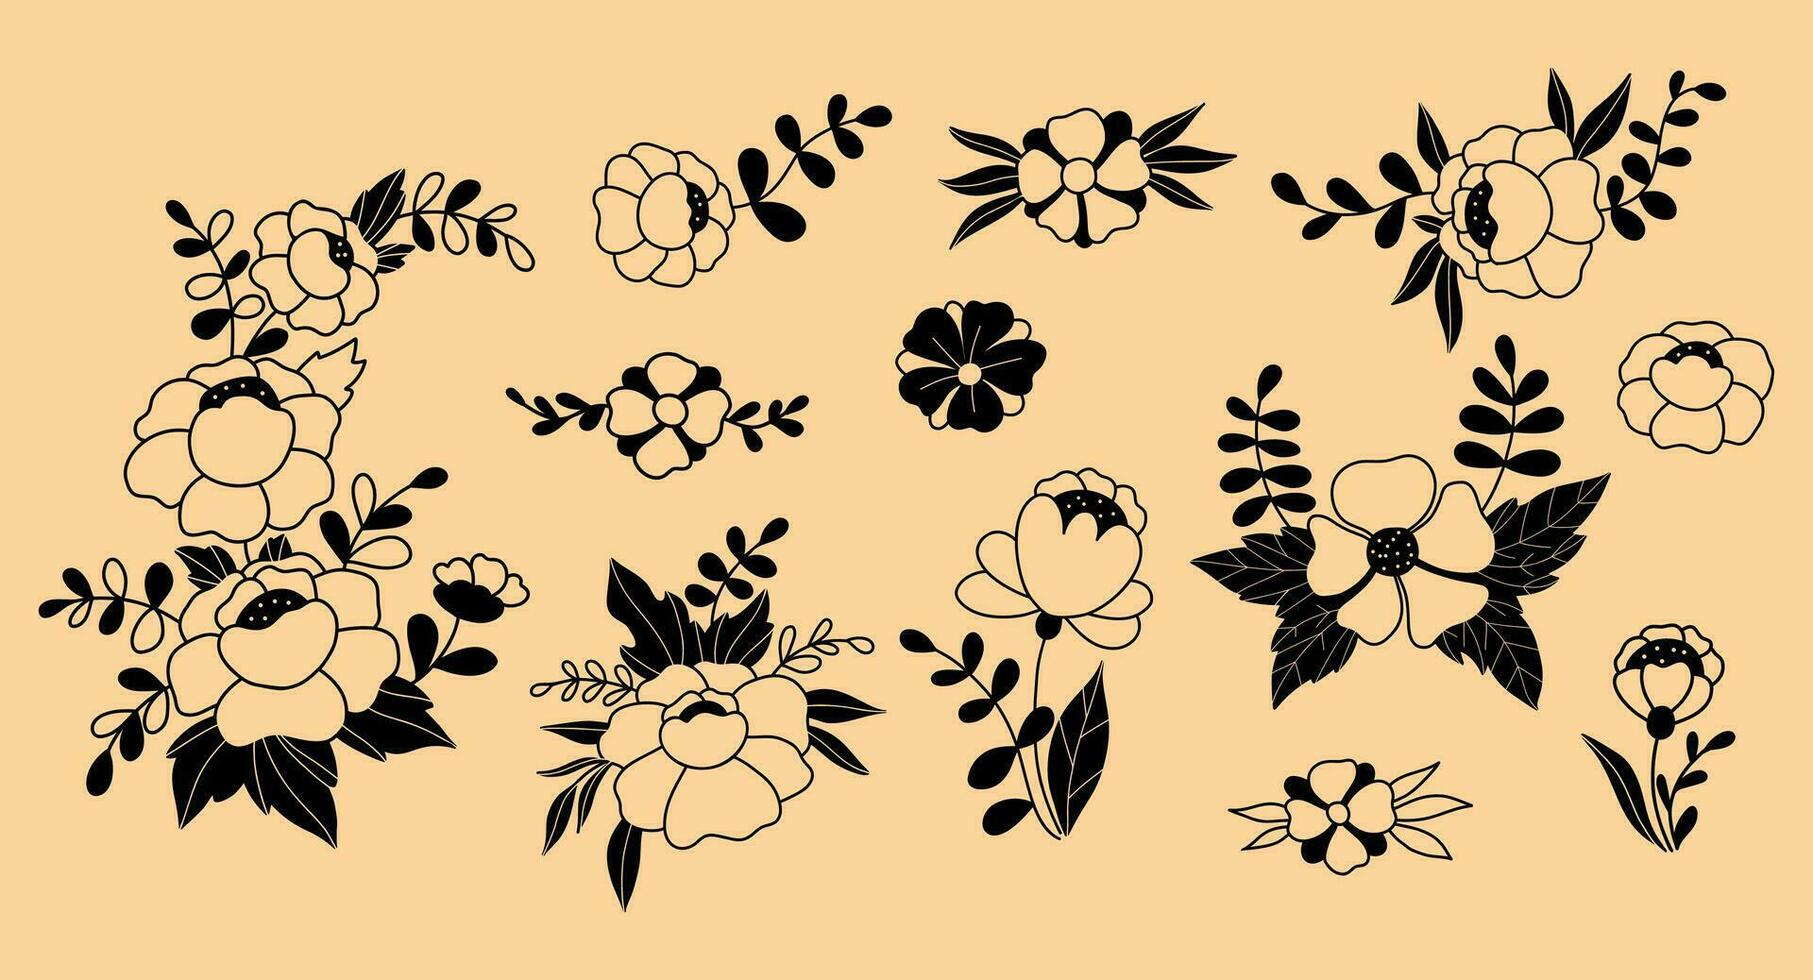 coleção flores e galhos rabiscos. vetor ilustração. isolado mão desenhado plantas